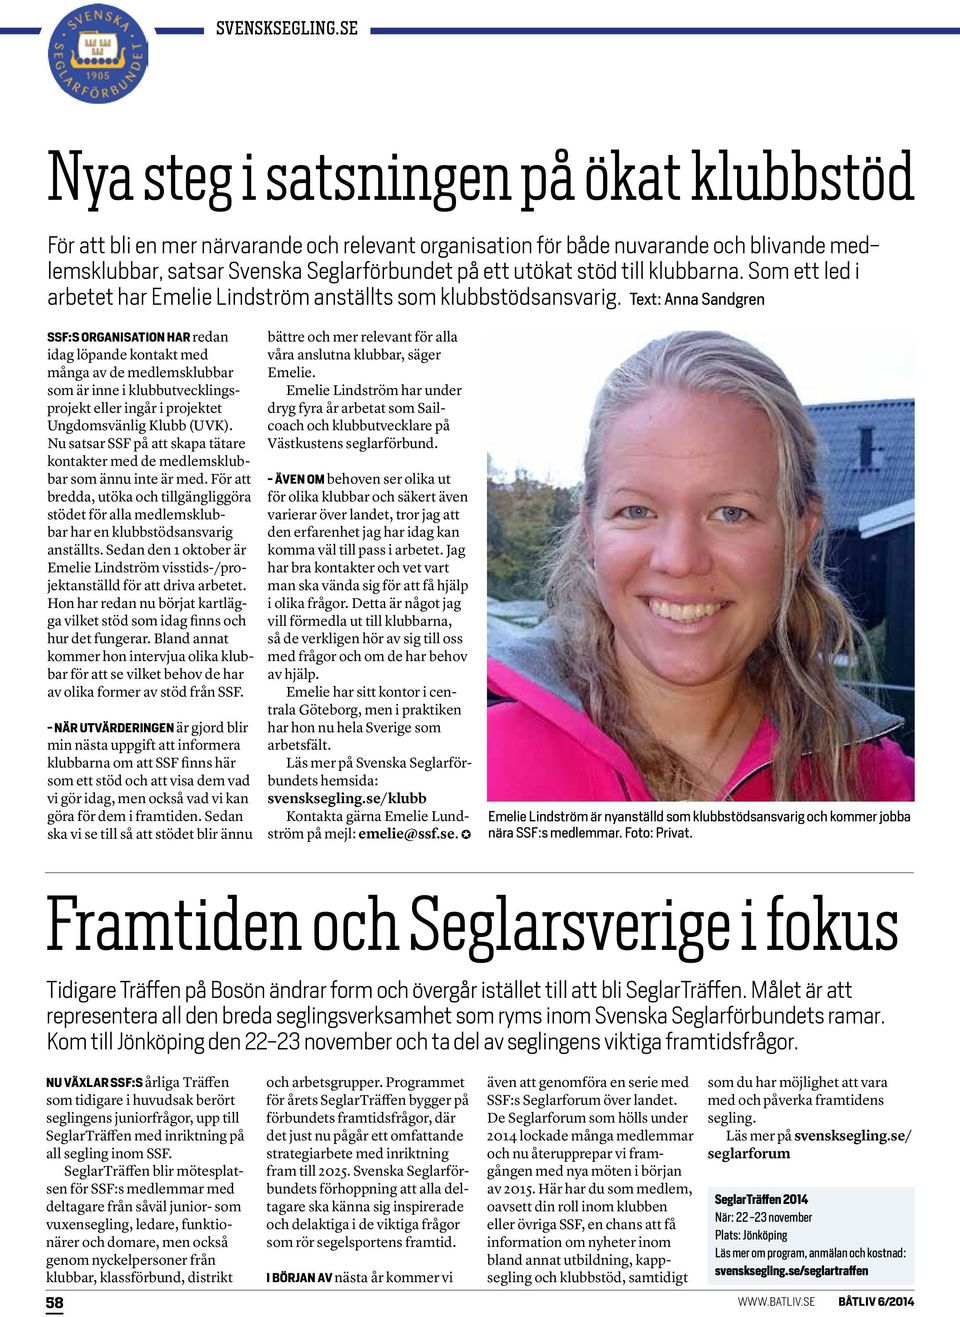 Text: Anna Sandgren SSF:S ORGANISATION HAR redan idag löpande kontakt med många av de medlemsklubbar som är inne i klubbutvecklingsprojekt eller ingår i projektet Ungdomsvänlig Klubb (UVK).